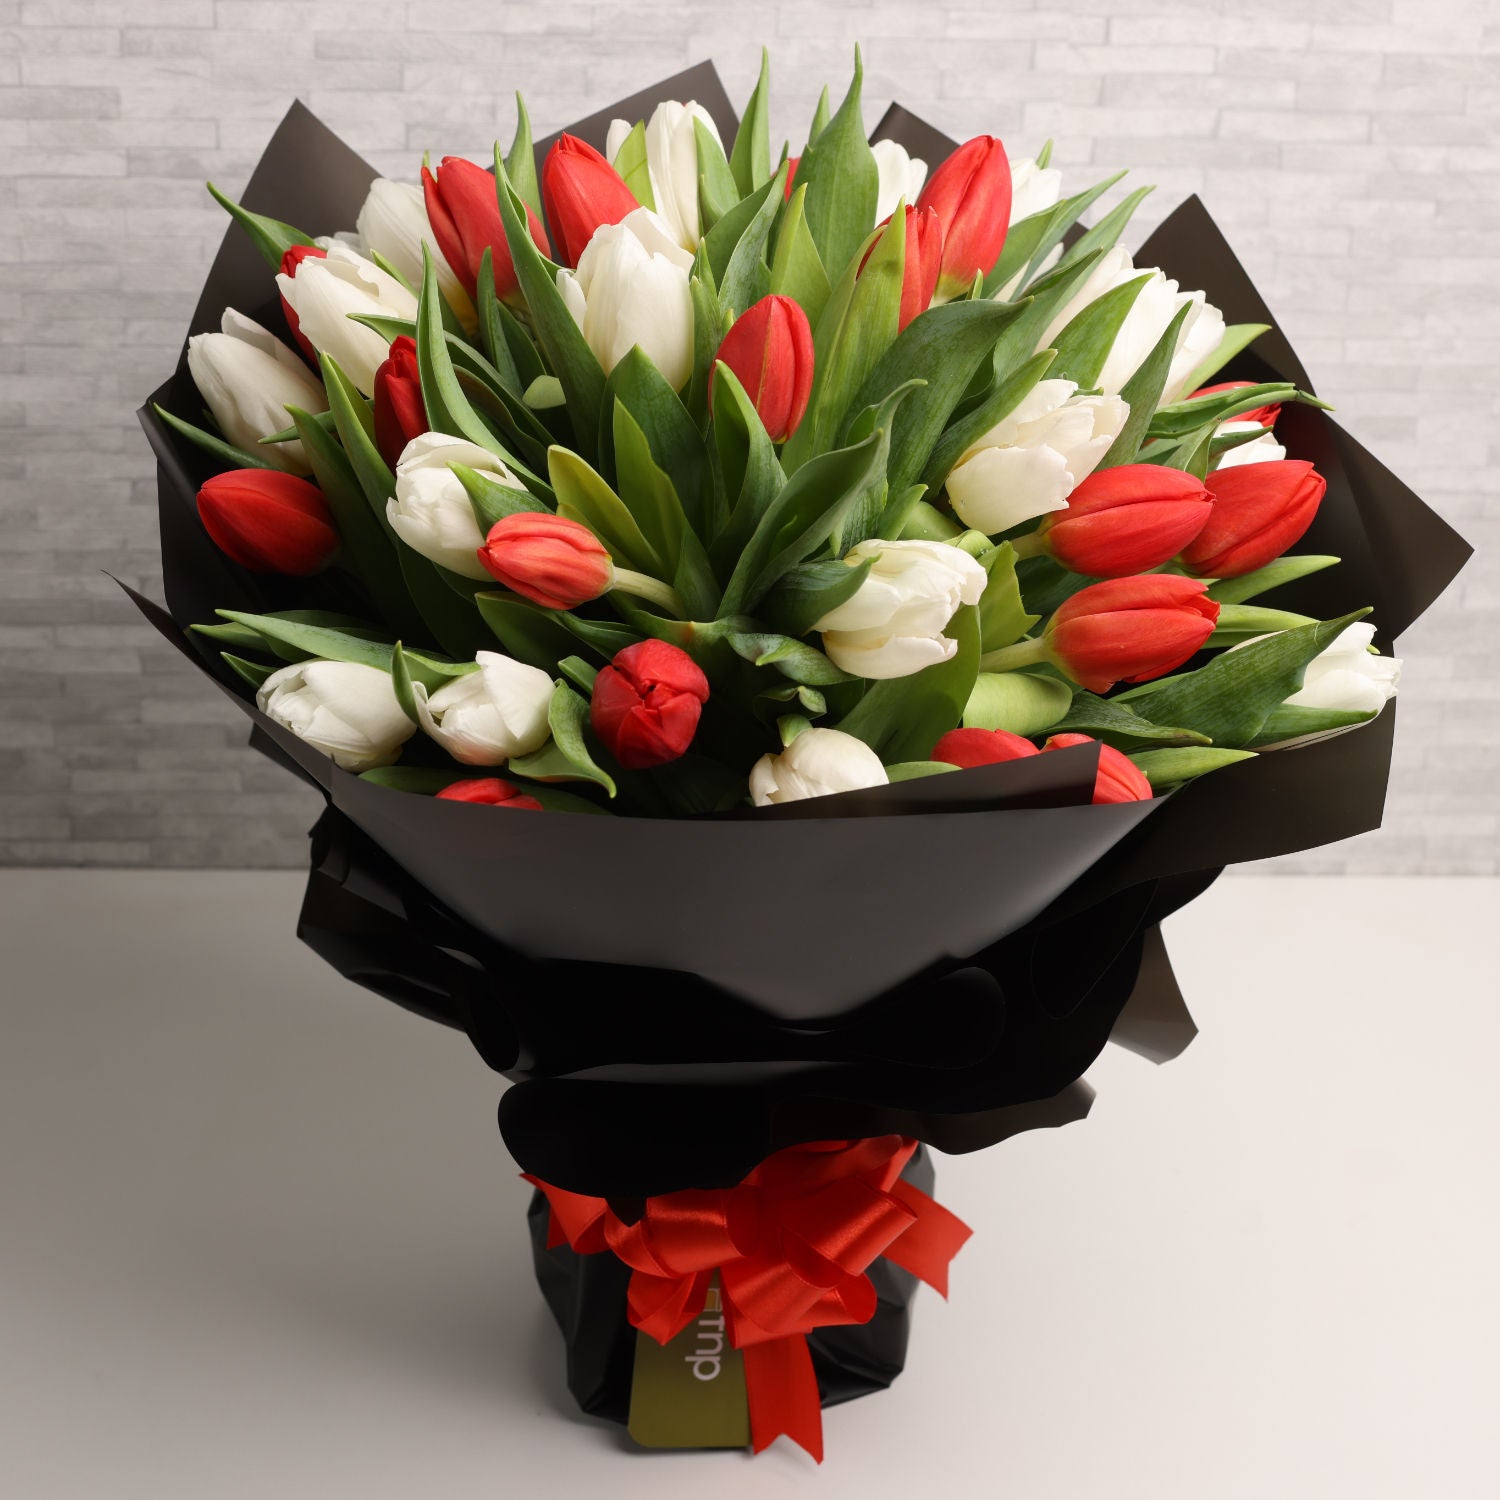 40 Tulips Hand Bouquet